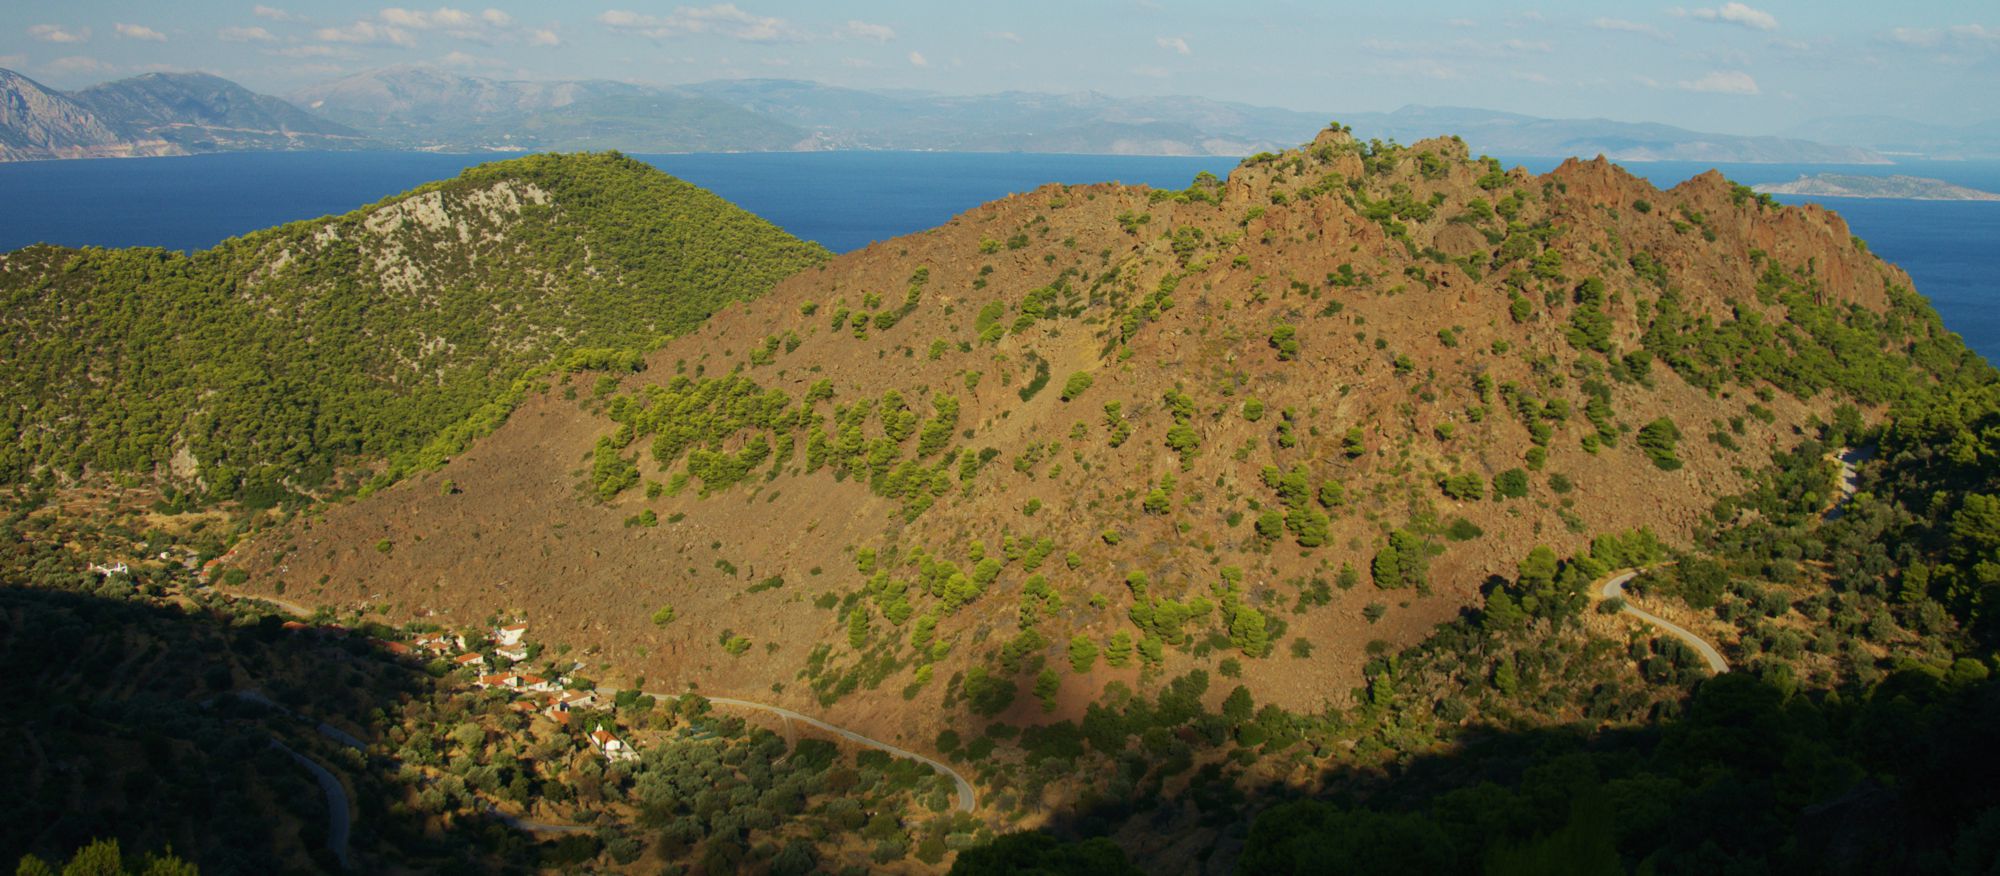 Μέθανα topoguide: Ο ηφαιστειακός κώνος της Καμμένης καλύπτεται από χαμηλά φρύγανα και αραιά πεύκα